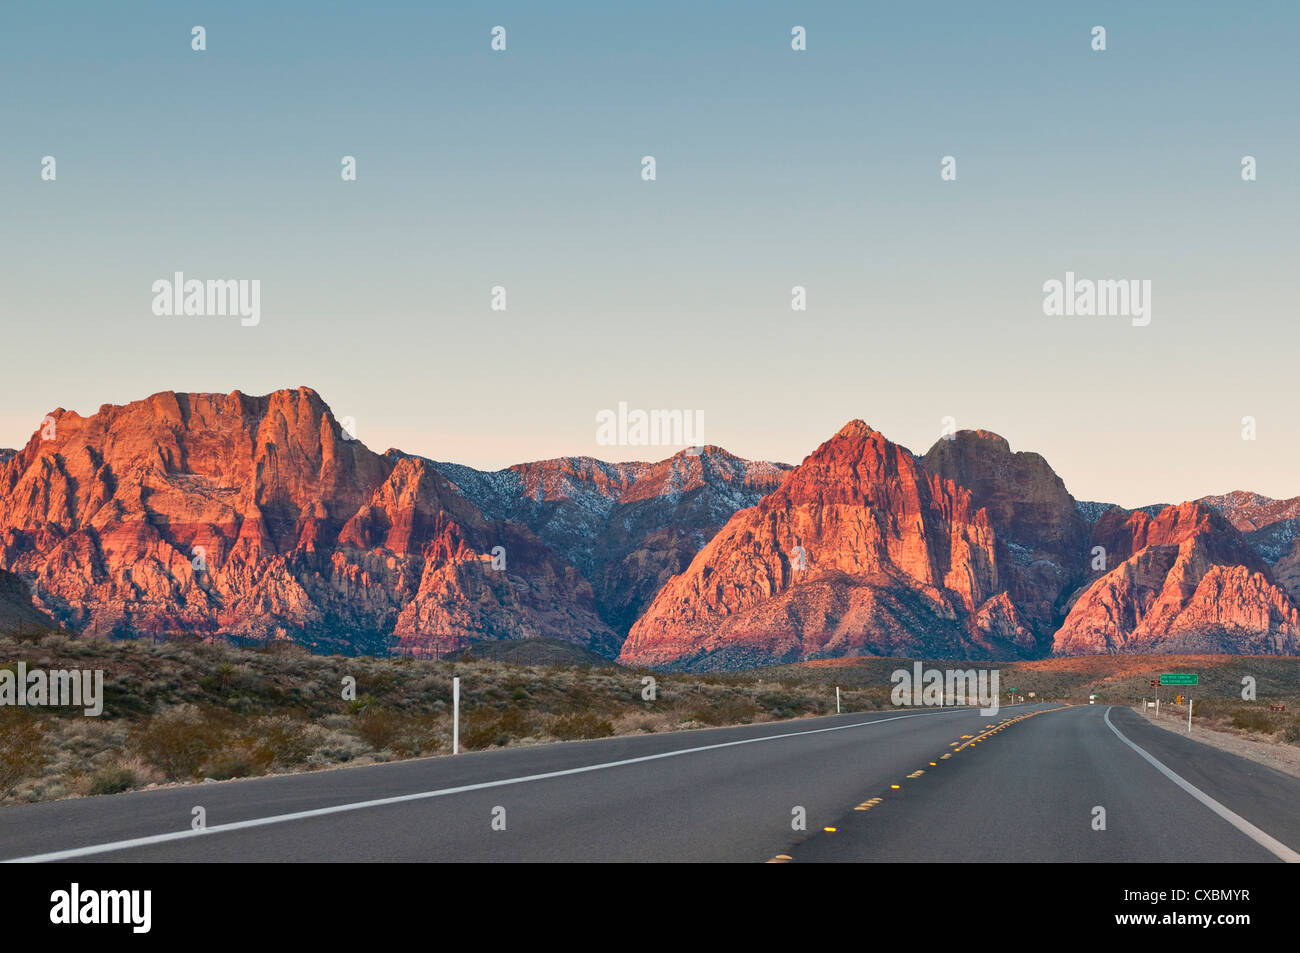 Red Rock Canyon außerhalb von Las Vegas, Nevada, Vereinigte Staaten von Amerika, Nordamerika Stockfoto